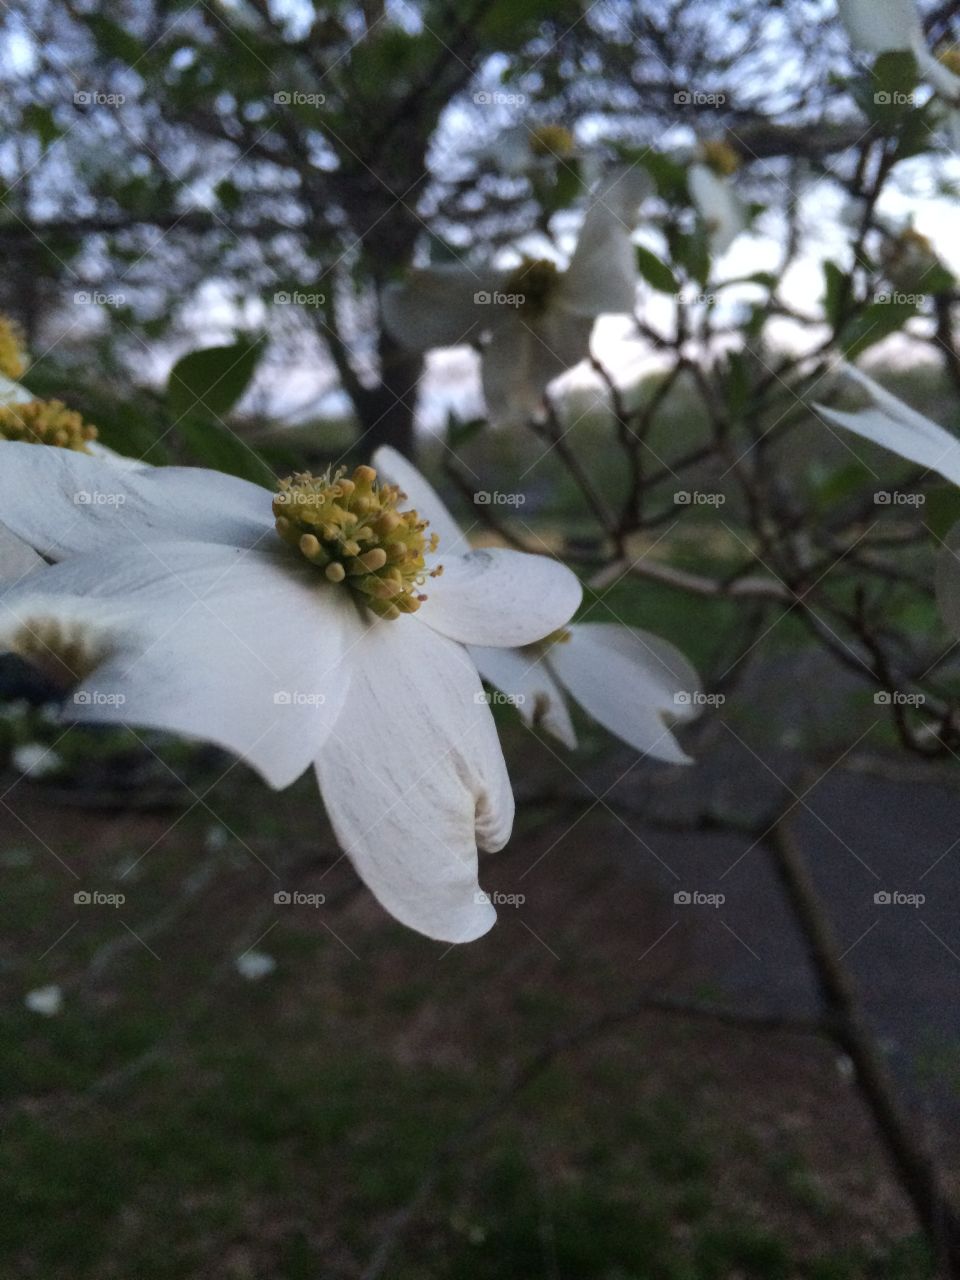 A wilting Virginia Dogwood flower before a mild summer sundown